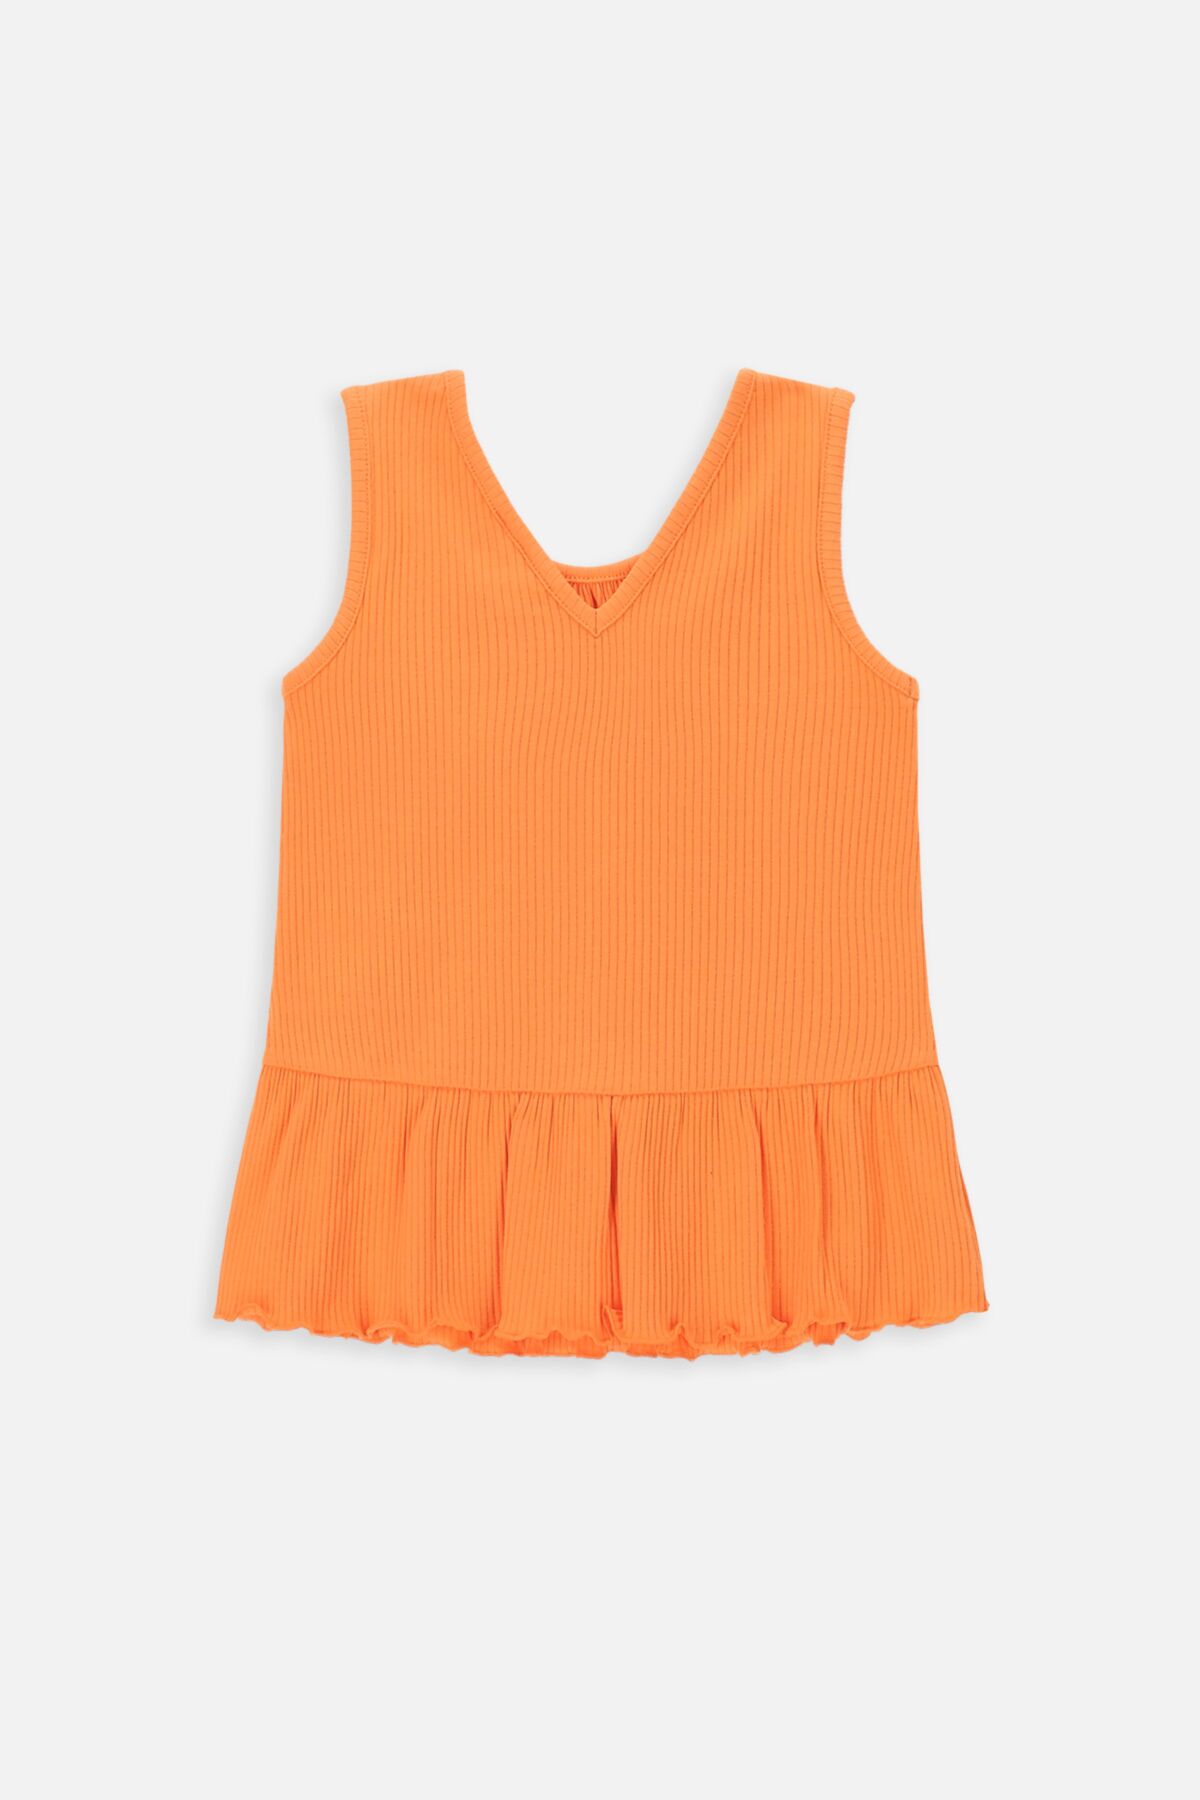 T-shirt bez rękawów pomarańczowy z ozdobną falbanką 2235262